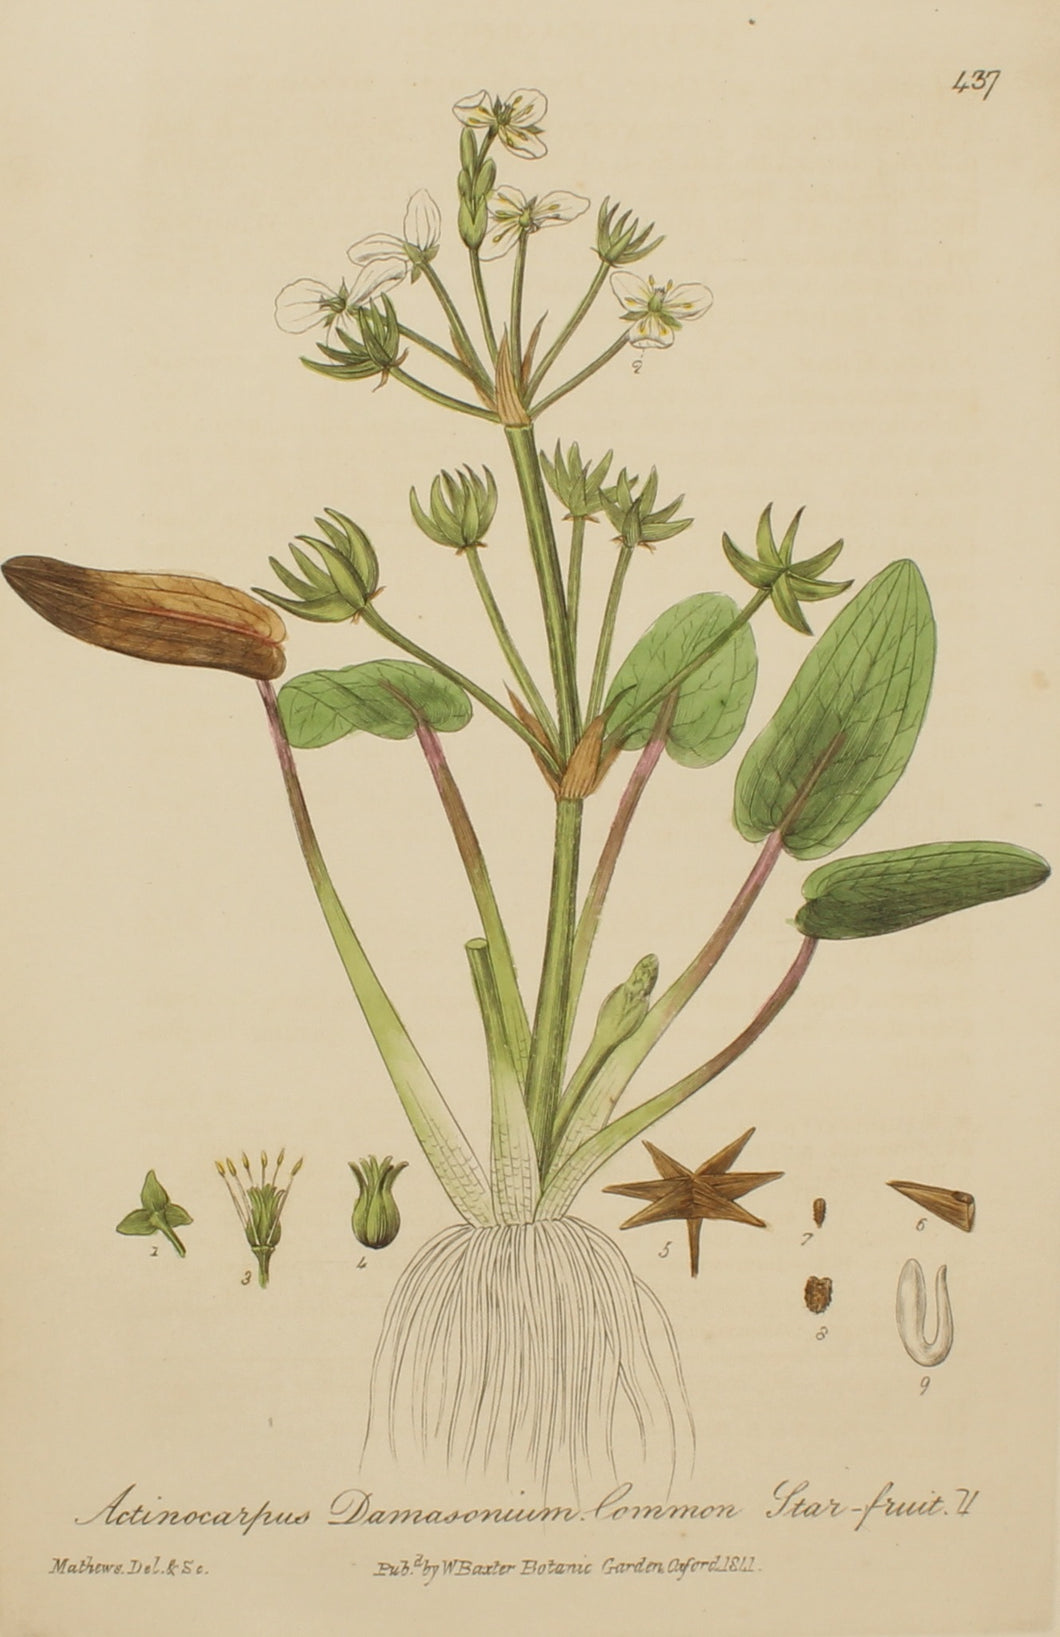 Botanical, Baxter William, Common Starfruit,1840-1843